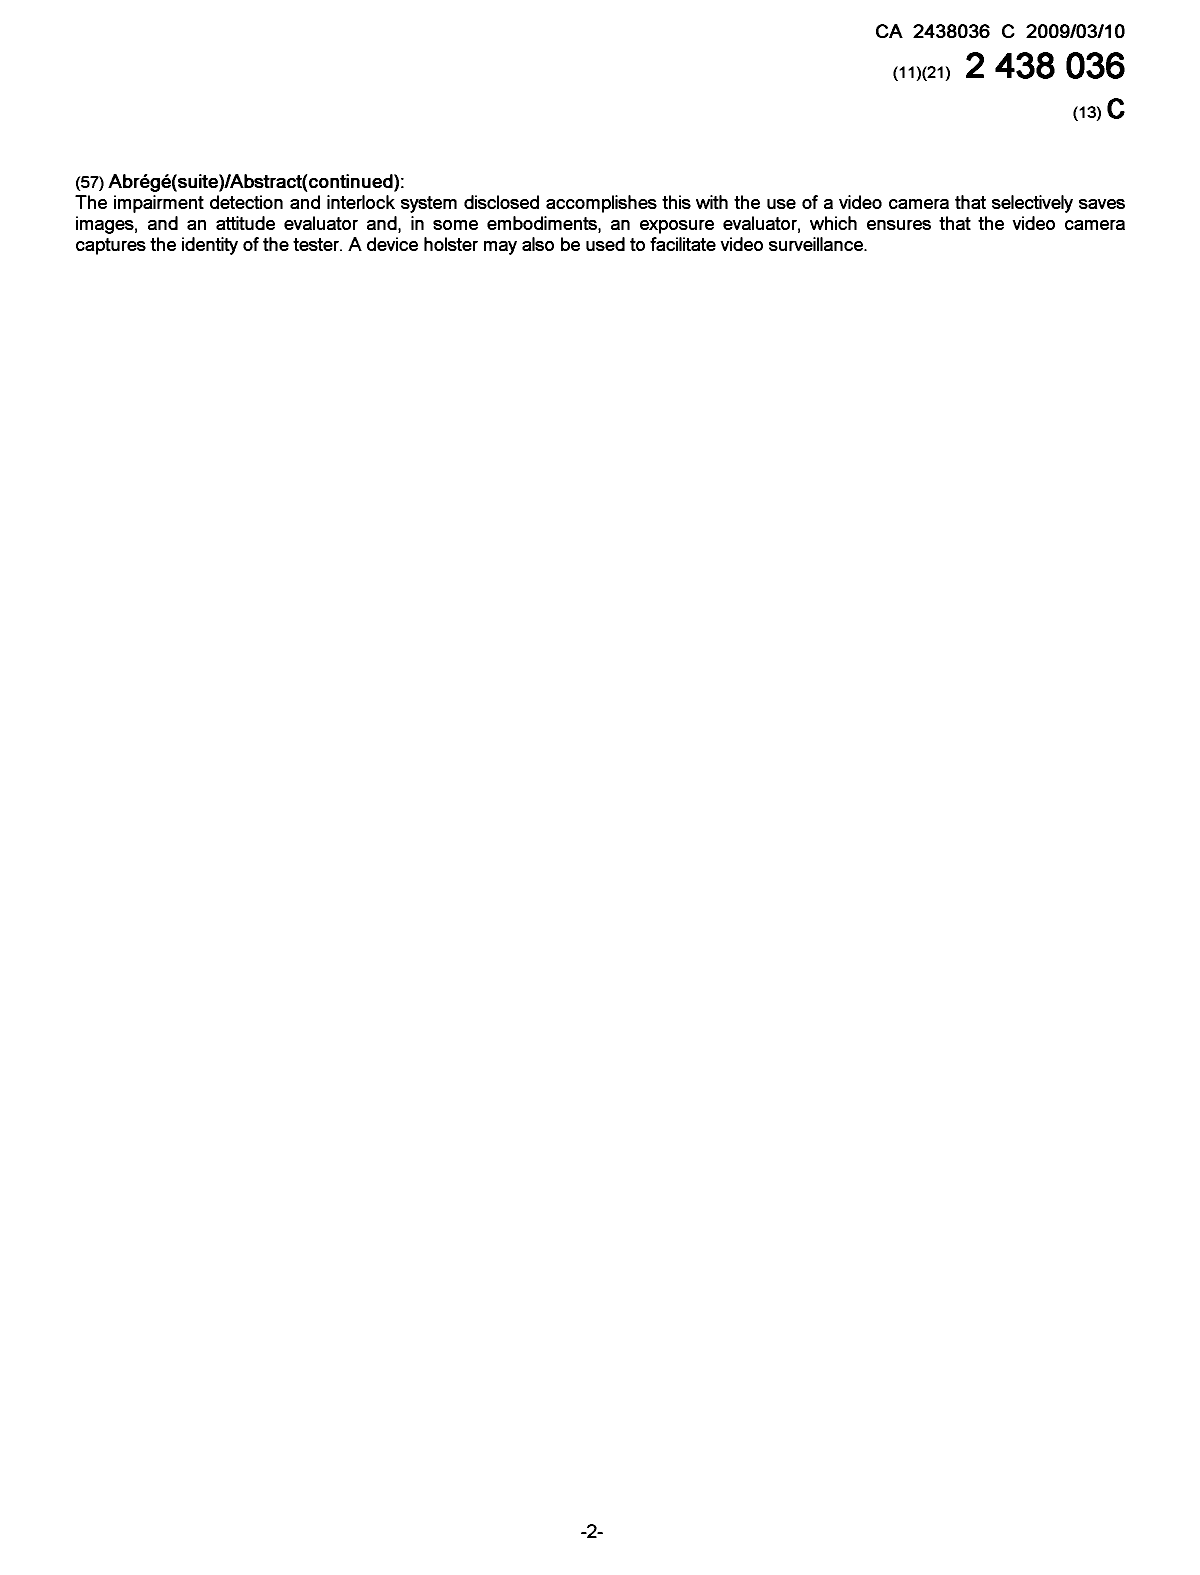 Document de brevet canadien 2438036. Page couverture 20081217. Image 2 de 2